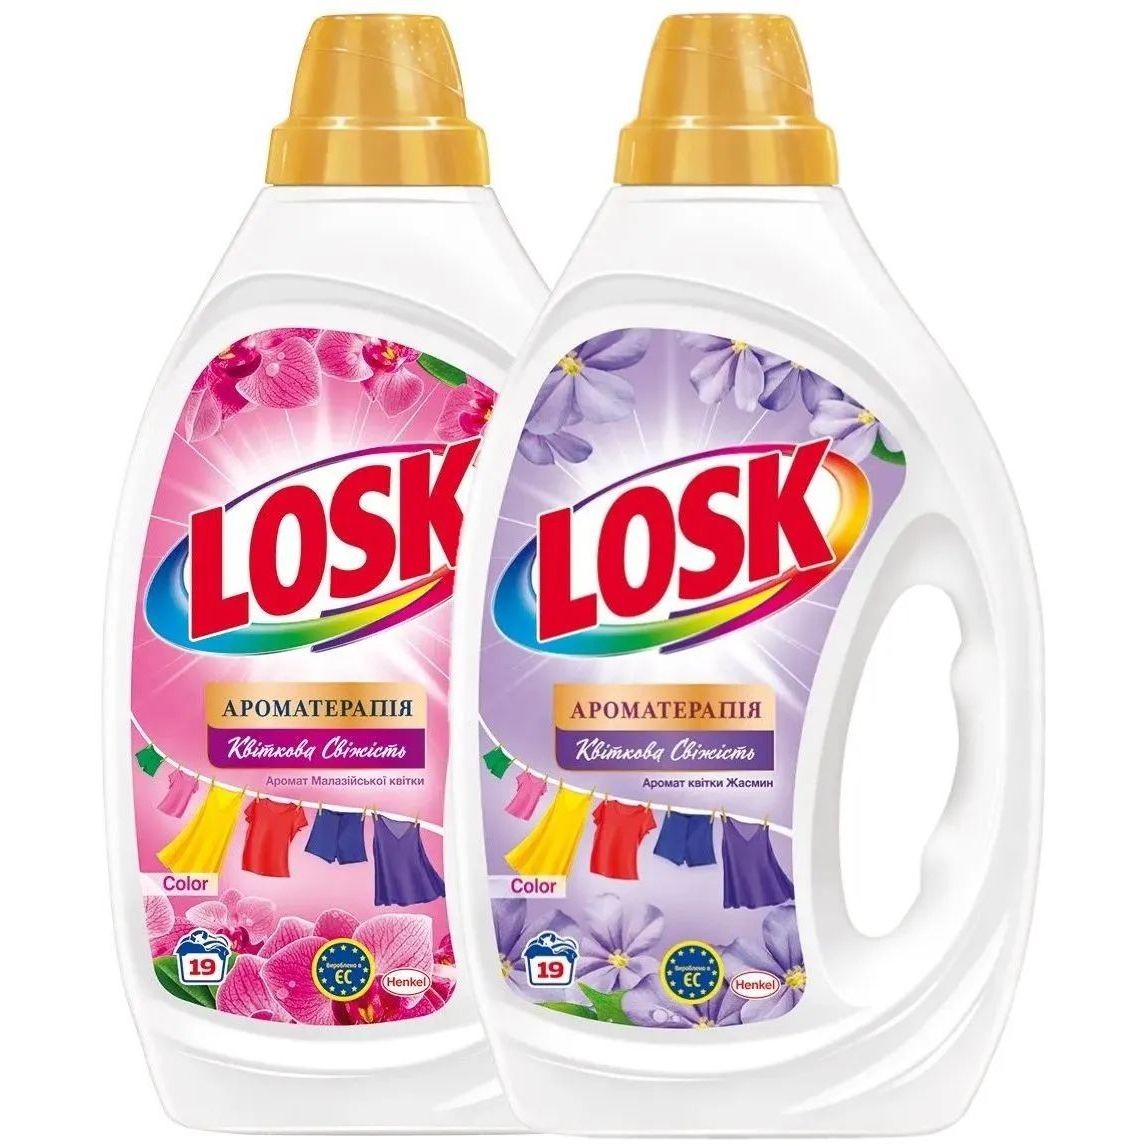 Набор Losk: Гель для стирки Losk Color Ароматерапия Эфирные масла и аромат цветка Жасмина, 855 мл + Гель для стирки Losk Color Ароматерапия Эфирные масла и аромат Малайзийского цветка, 855 мл - фото 1